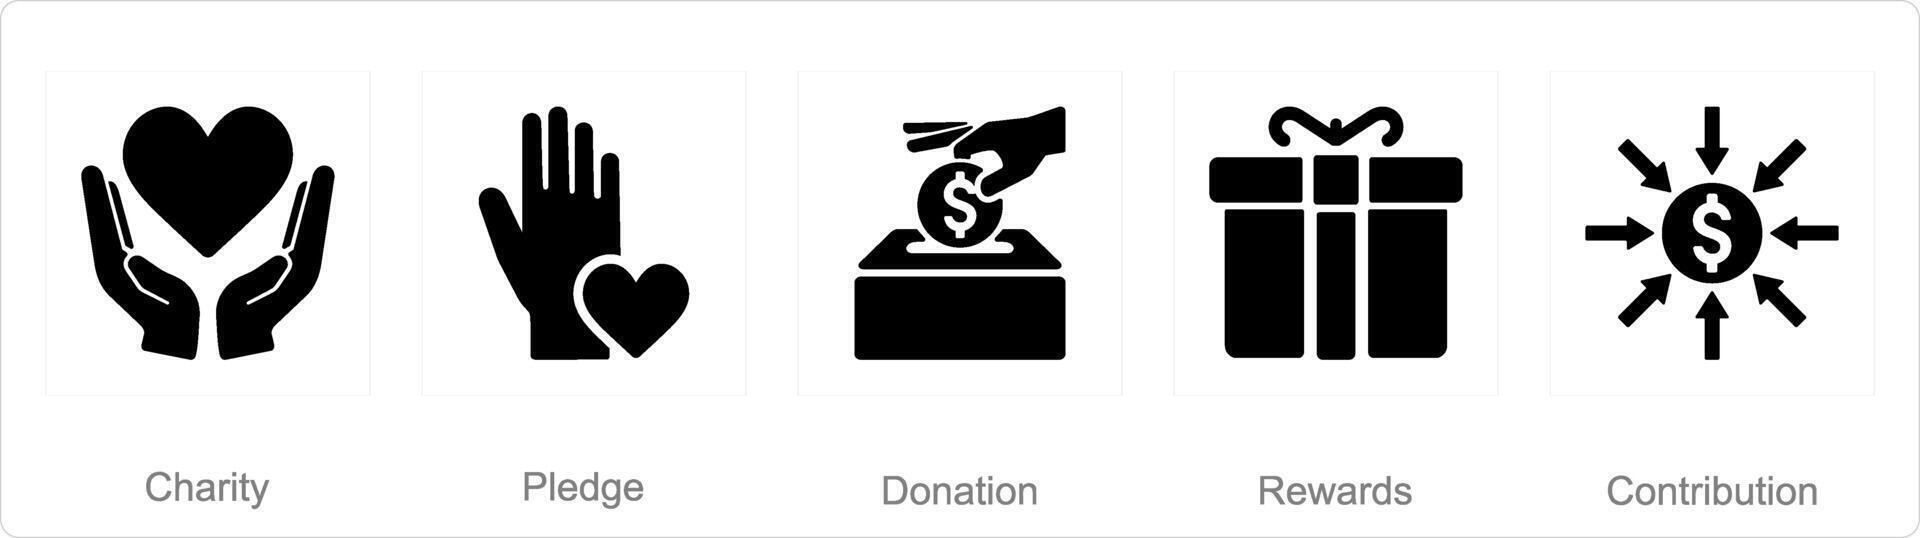 un' impostato di 5 raccolta di fondi icone come beneficenza, impegno, donazione vettore